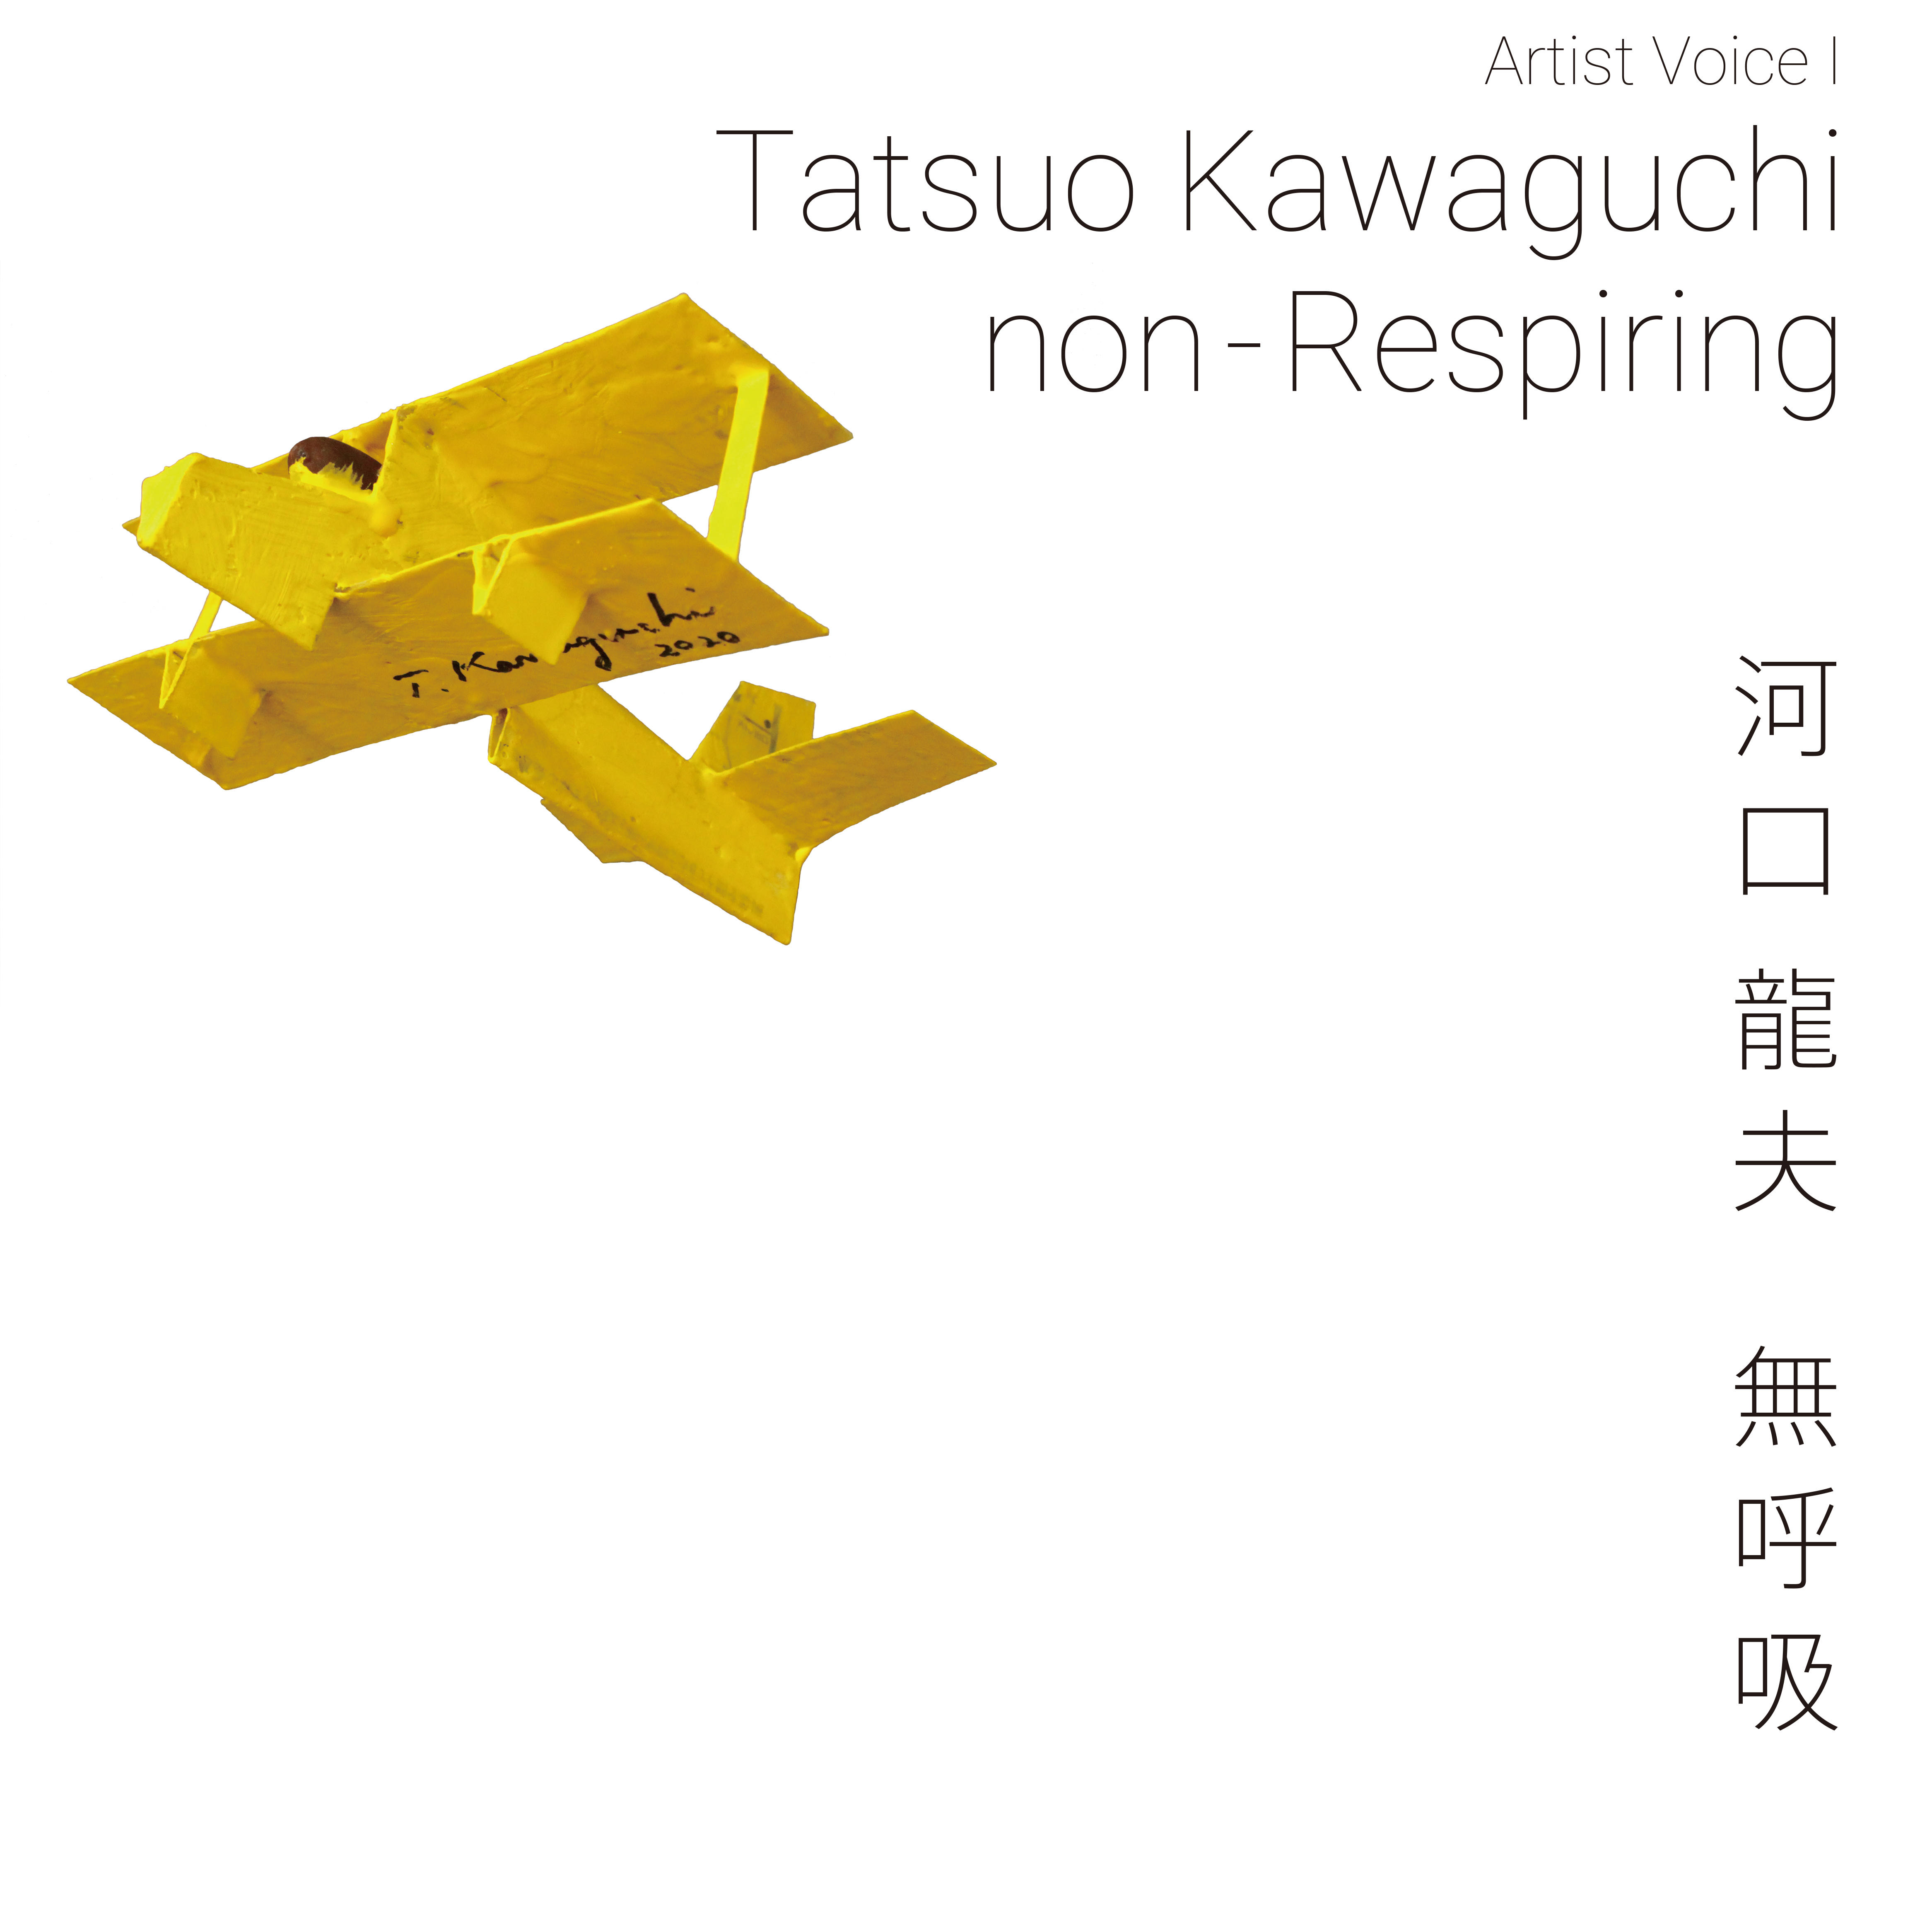 Tatsuo Kawaguchi @ Keio University Art Center, Tokyo